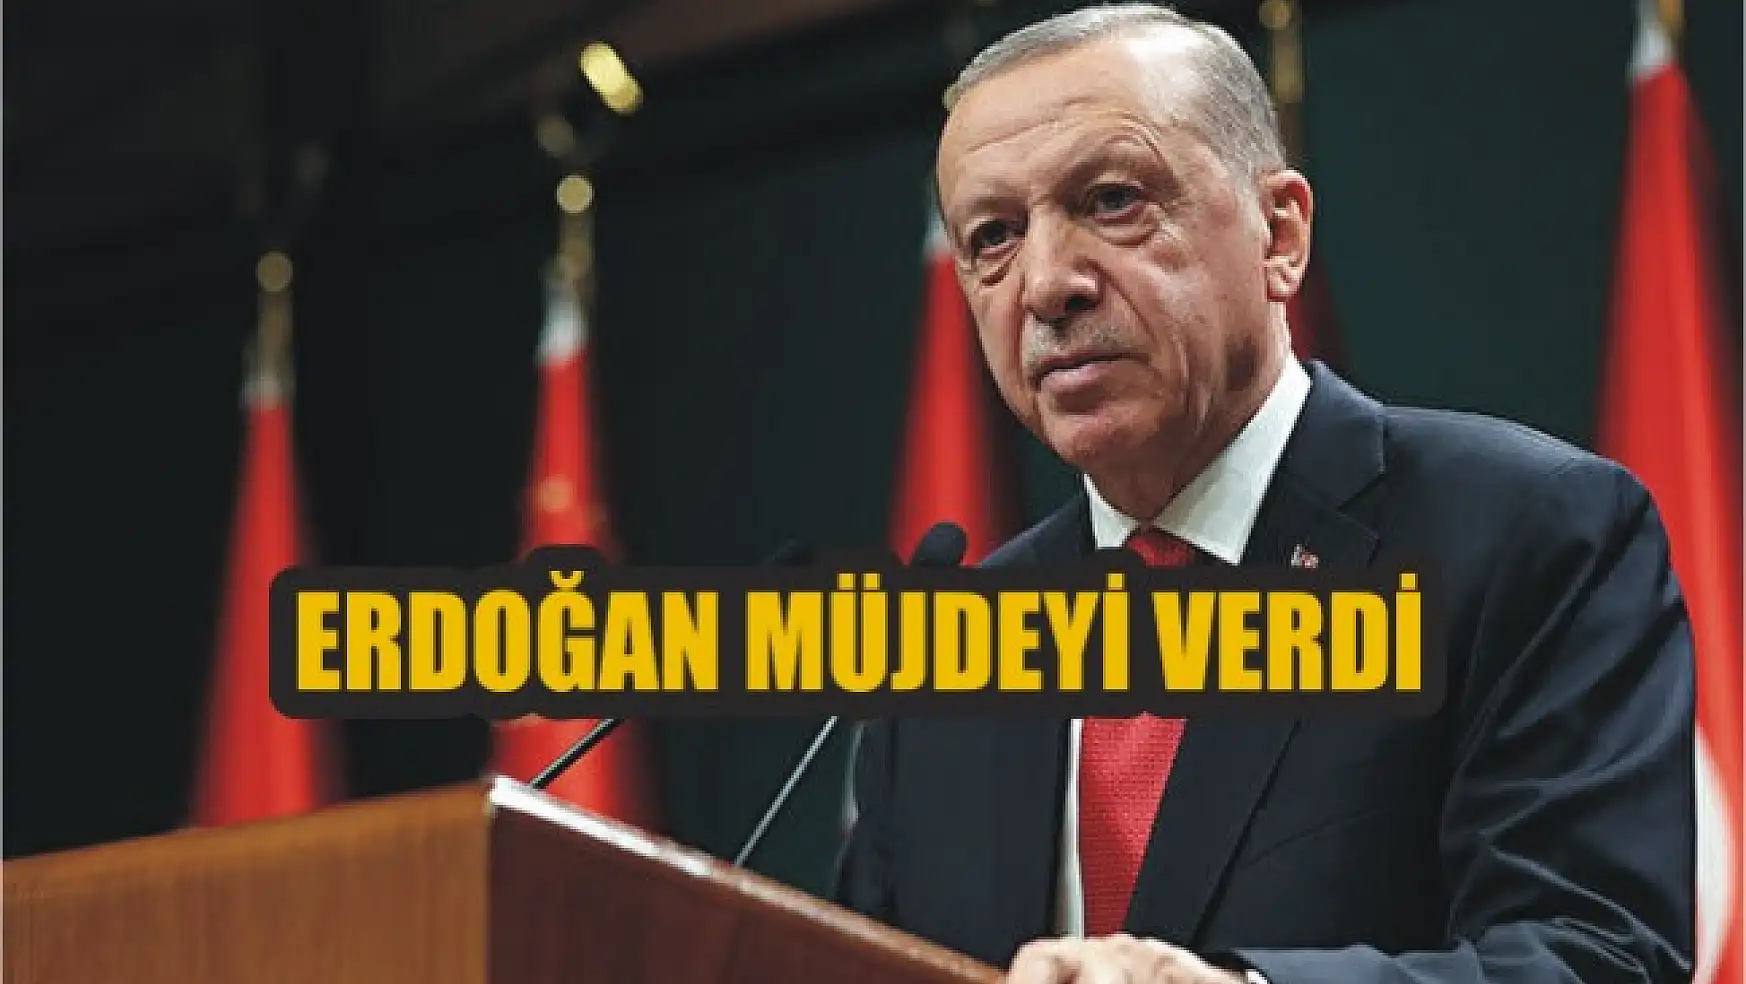 Erdoğan müjdeyi verdi: 'Yarın inşallah asgari ücreti açıklayacağız'